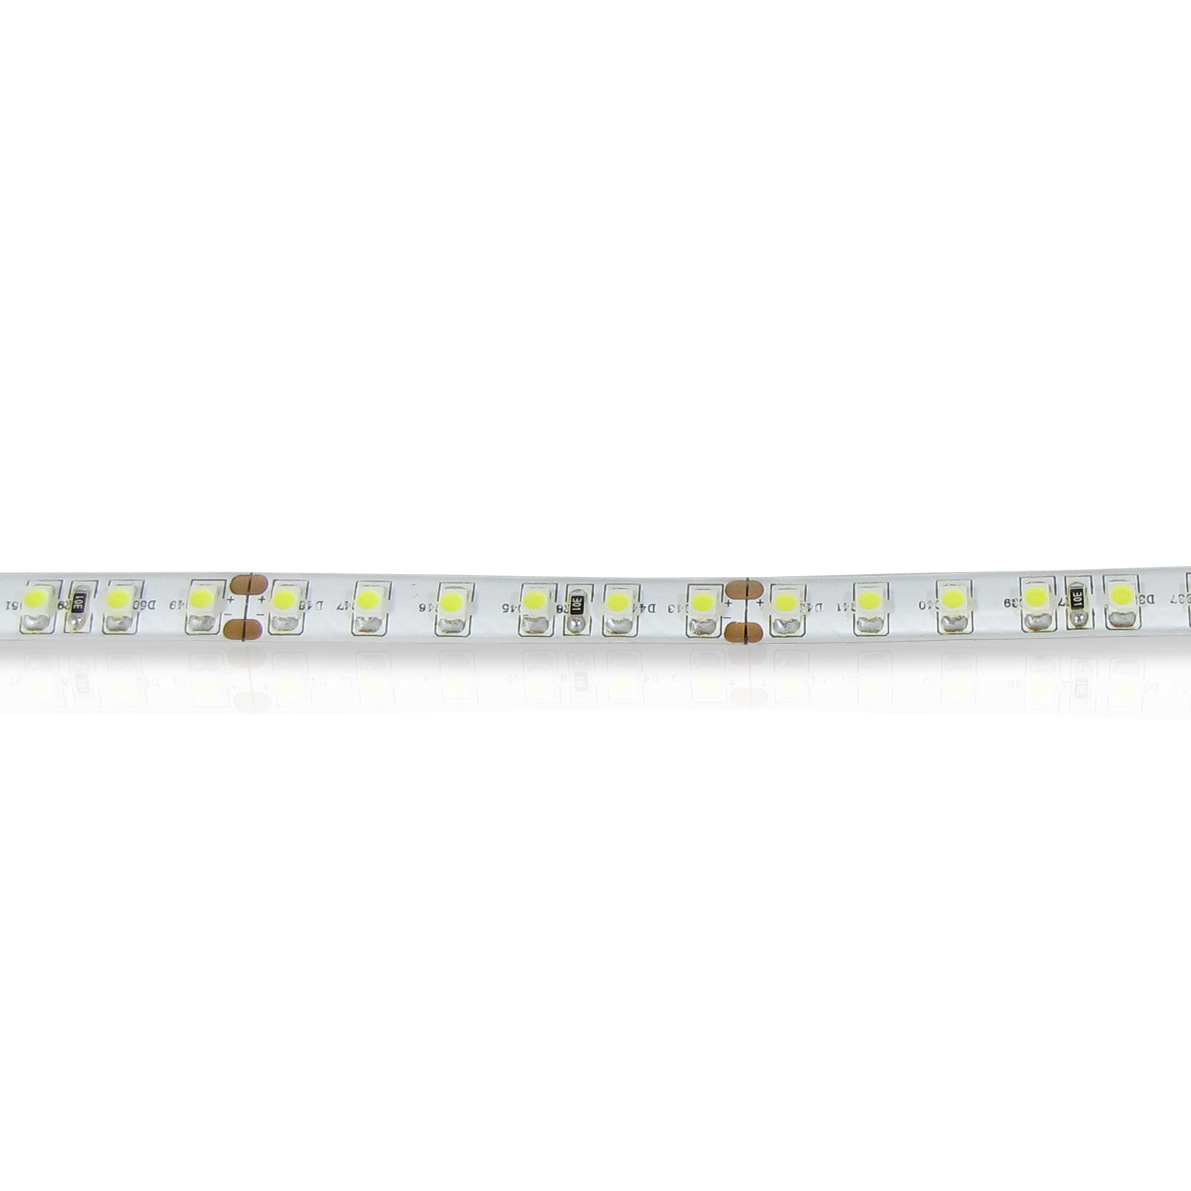 светодиодная лента standart pro class, 3528, 120 led/m, white, 24v, ip65, артикул 52678